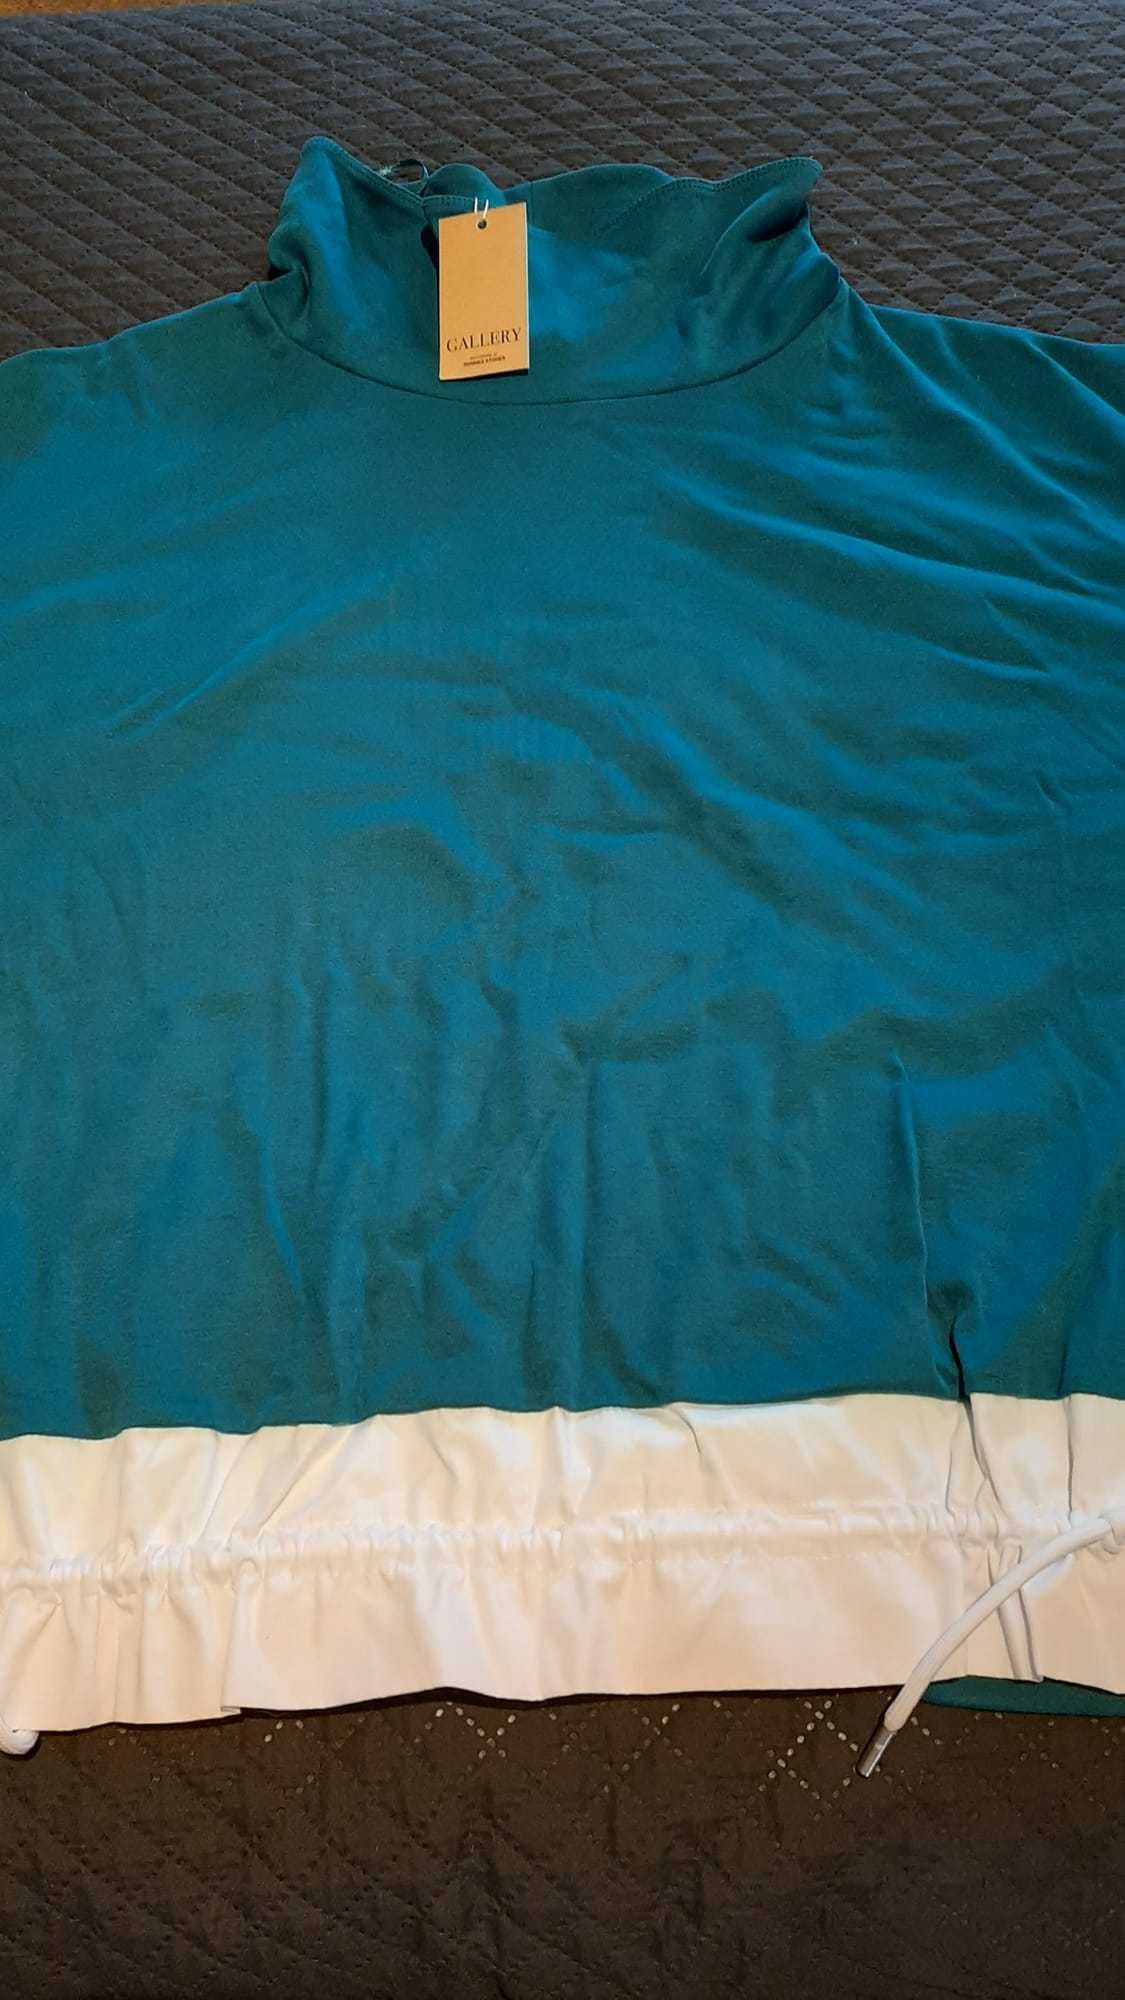 Camisola azul esverdeado da Gallery [NOVA COM ETIQUETA]